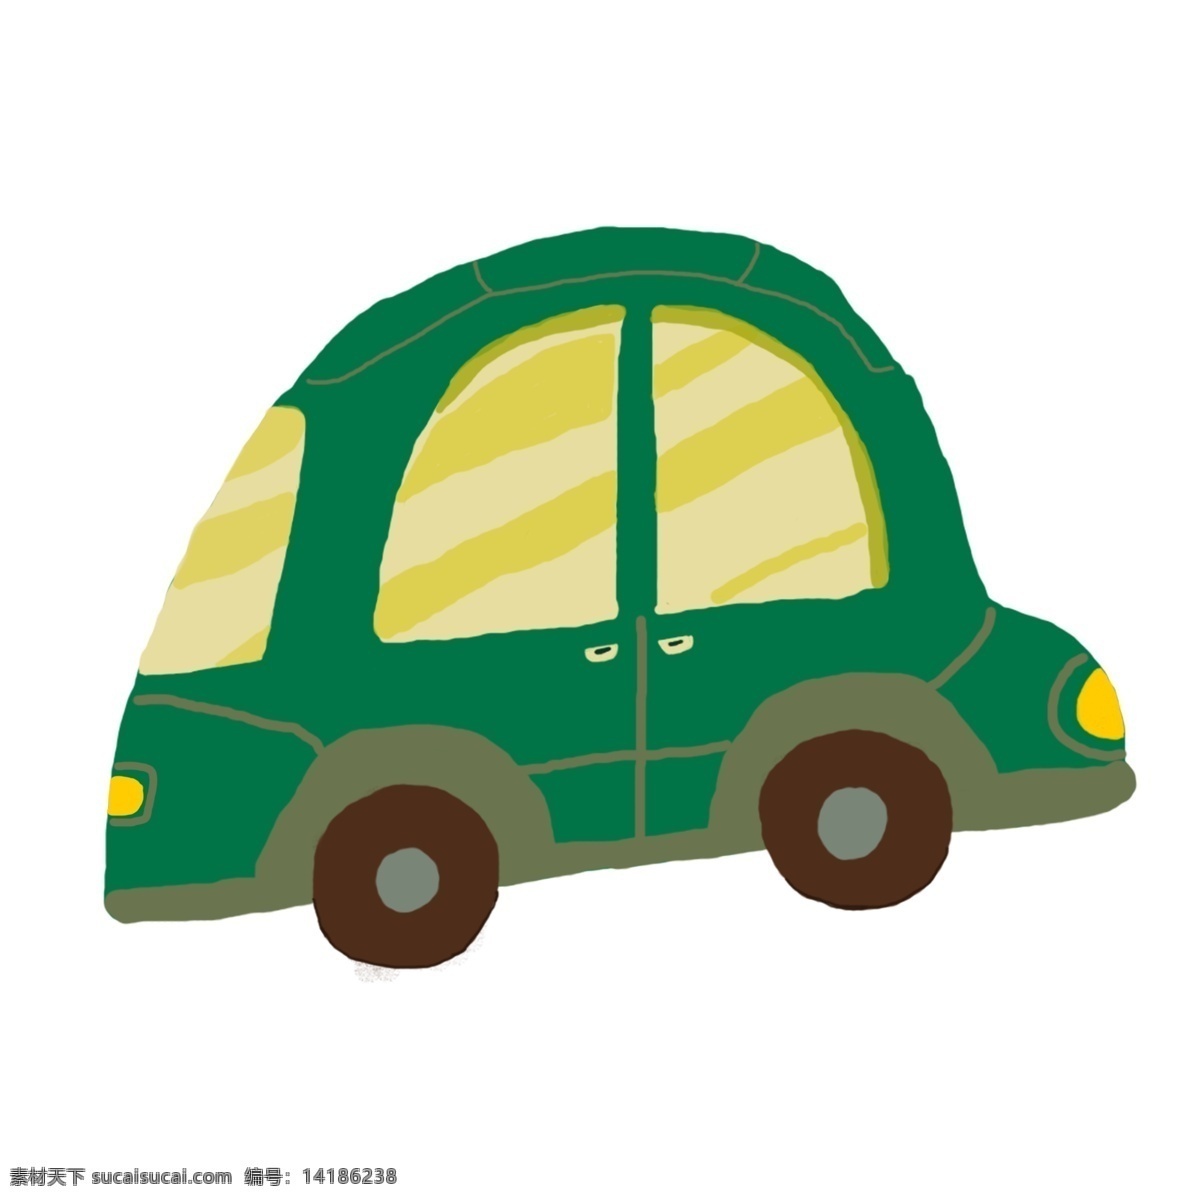 行驶 中 绿色 小汽车 卡通 插画 汽车 可爱 灯光 轿车 迷你 车窗 车门 黄色 手绘 矢量 免扣